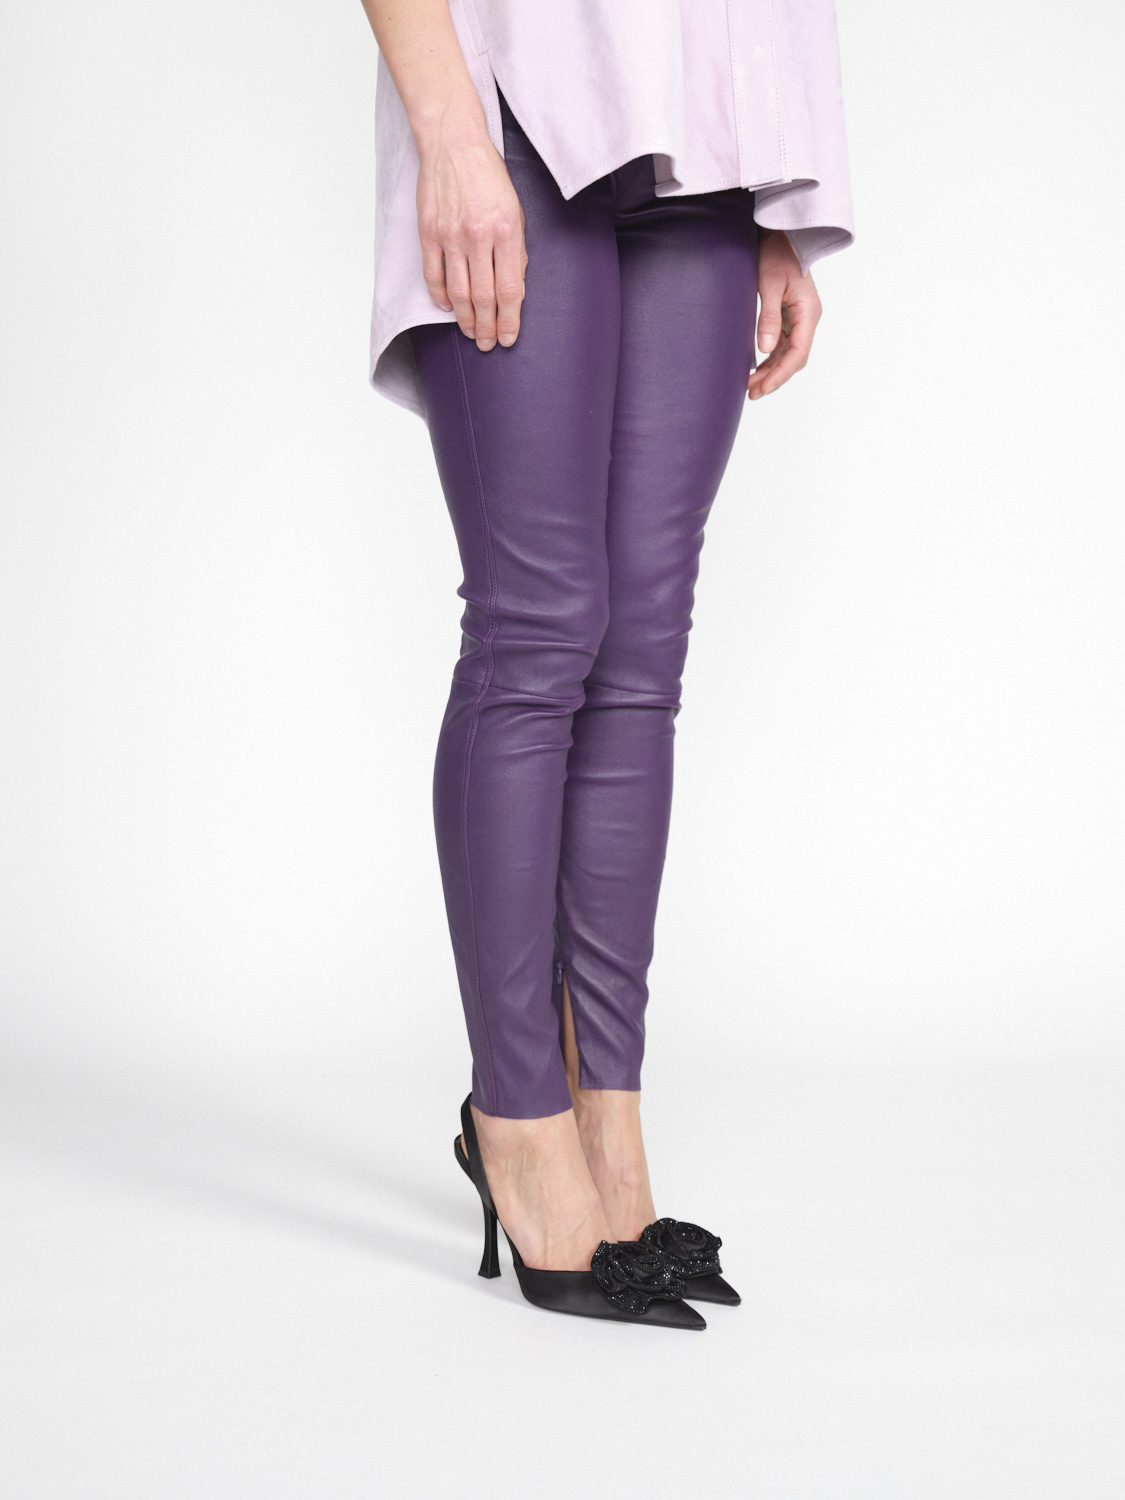 jitrois Pantalon Wynn Agneau - Pants in lamb leather purple 38